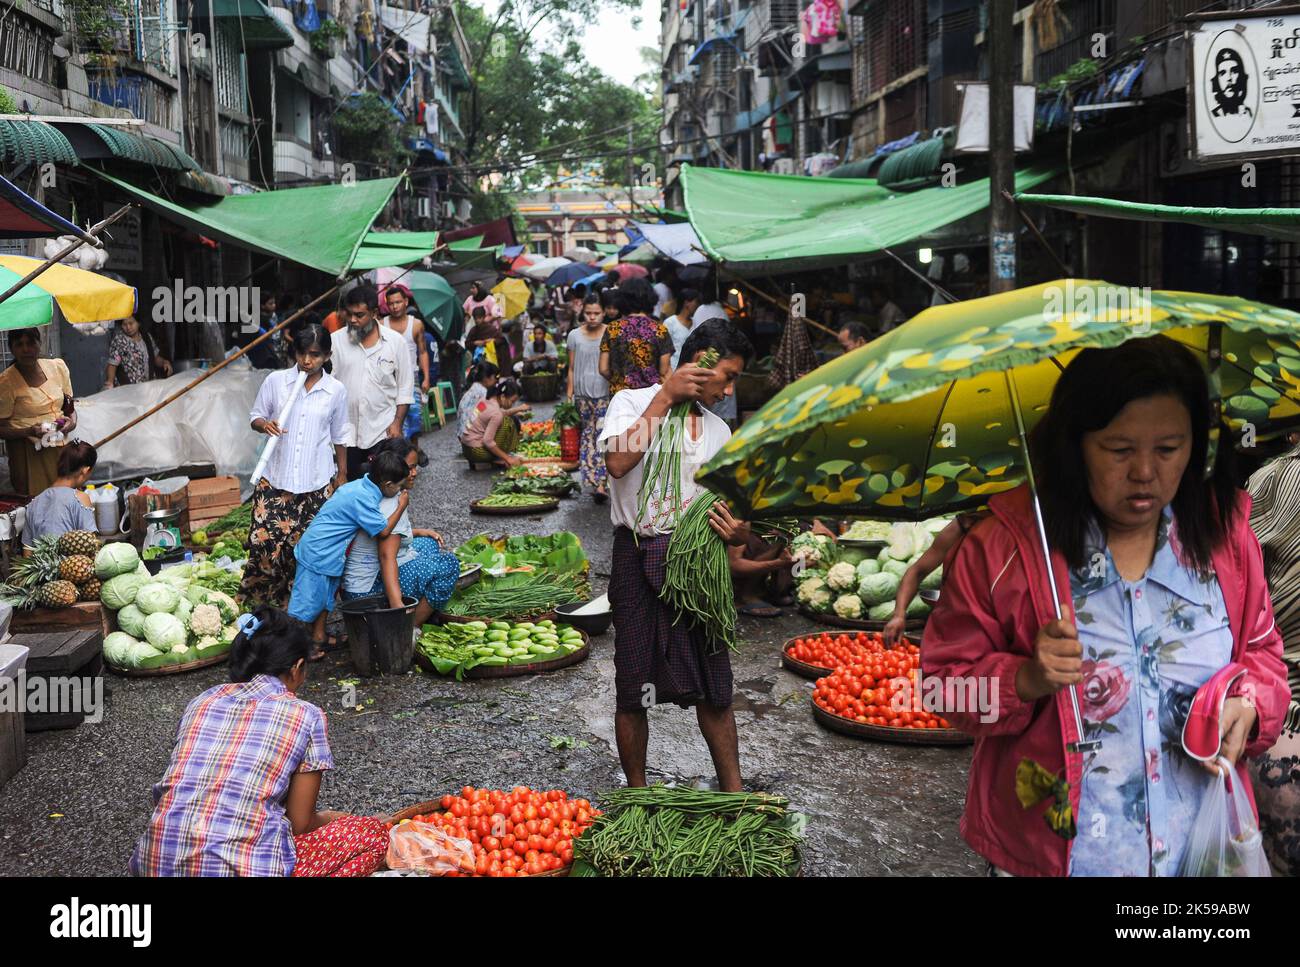 28.07.2013, Myanmar, Yangon - la scène du marché montre les gens achetant des légumes frais et de la nourriture dans un marché de rue dans le centre-ville pendant la saison des pluies Banque D'Images